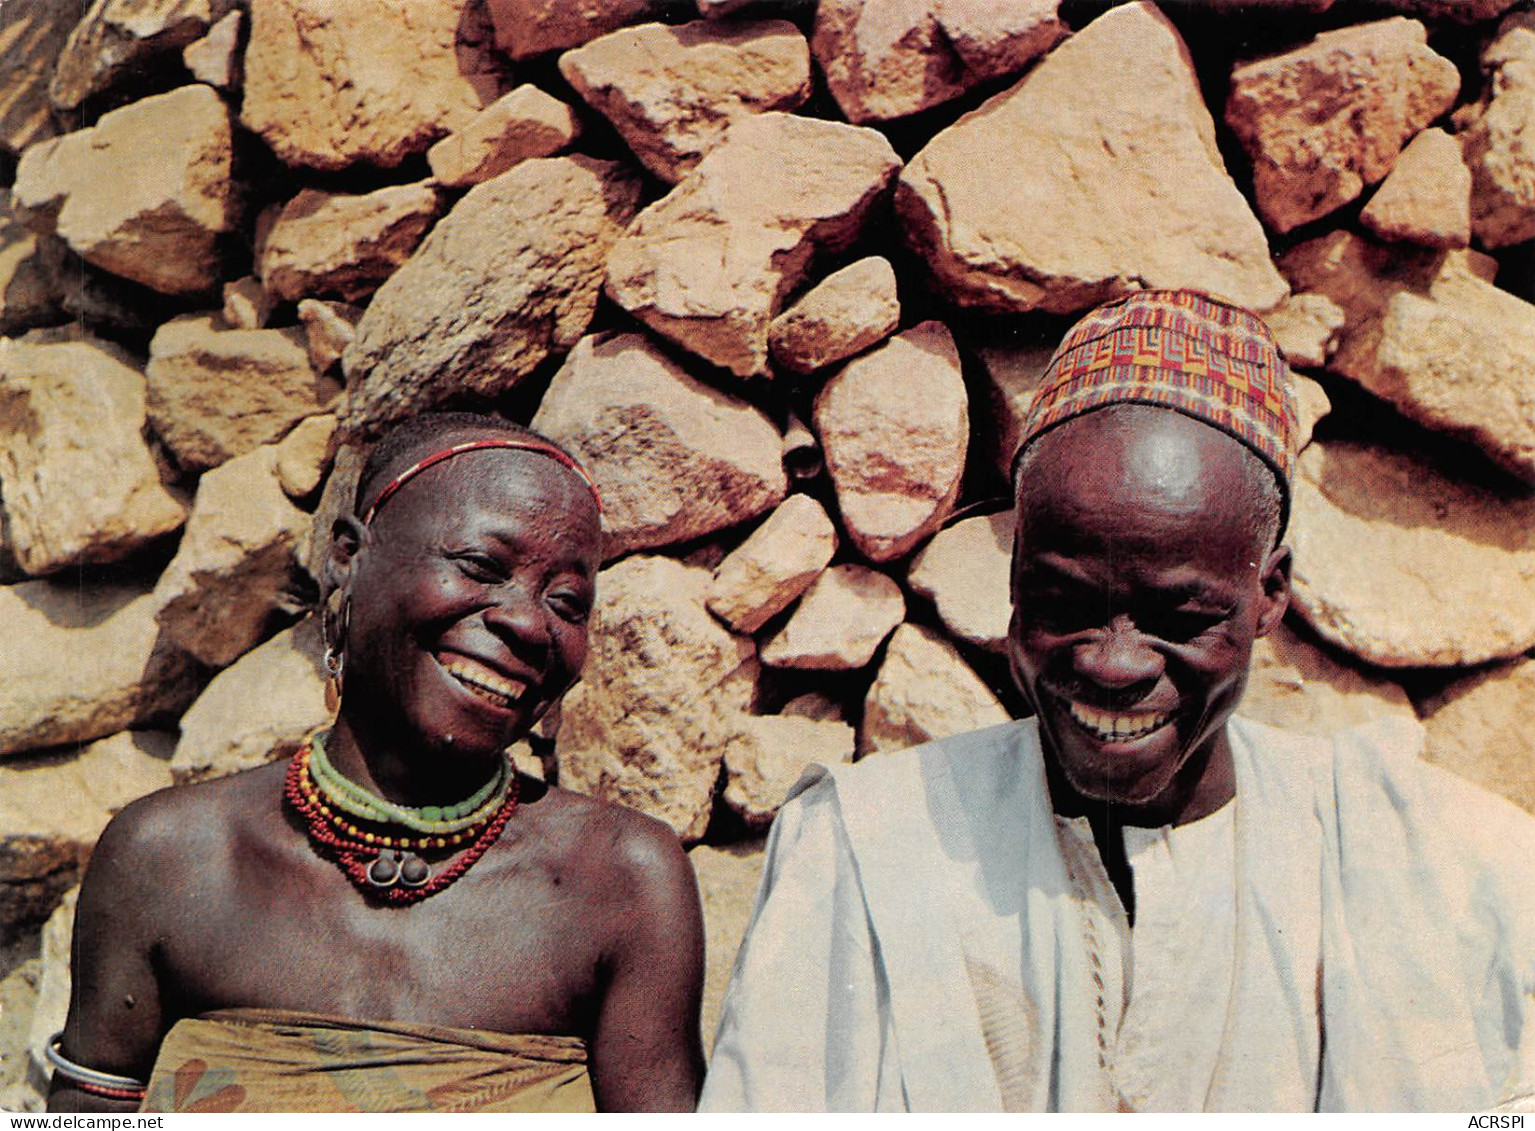 CAMEROUN OUDJILA - NORD CAMEROUN - Une Vieillesse Heureuse, Un Vieux Couple Souriant  N° 31 \ML4025 - Camerún